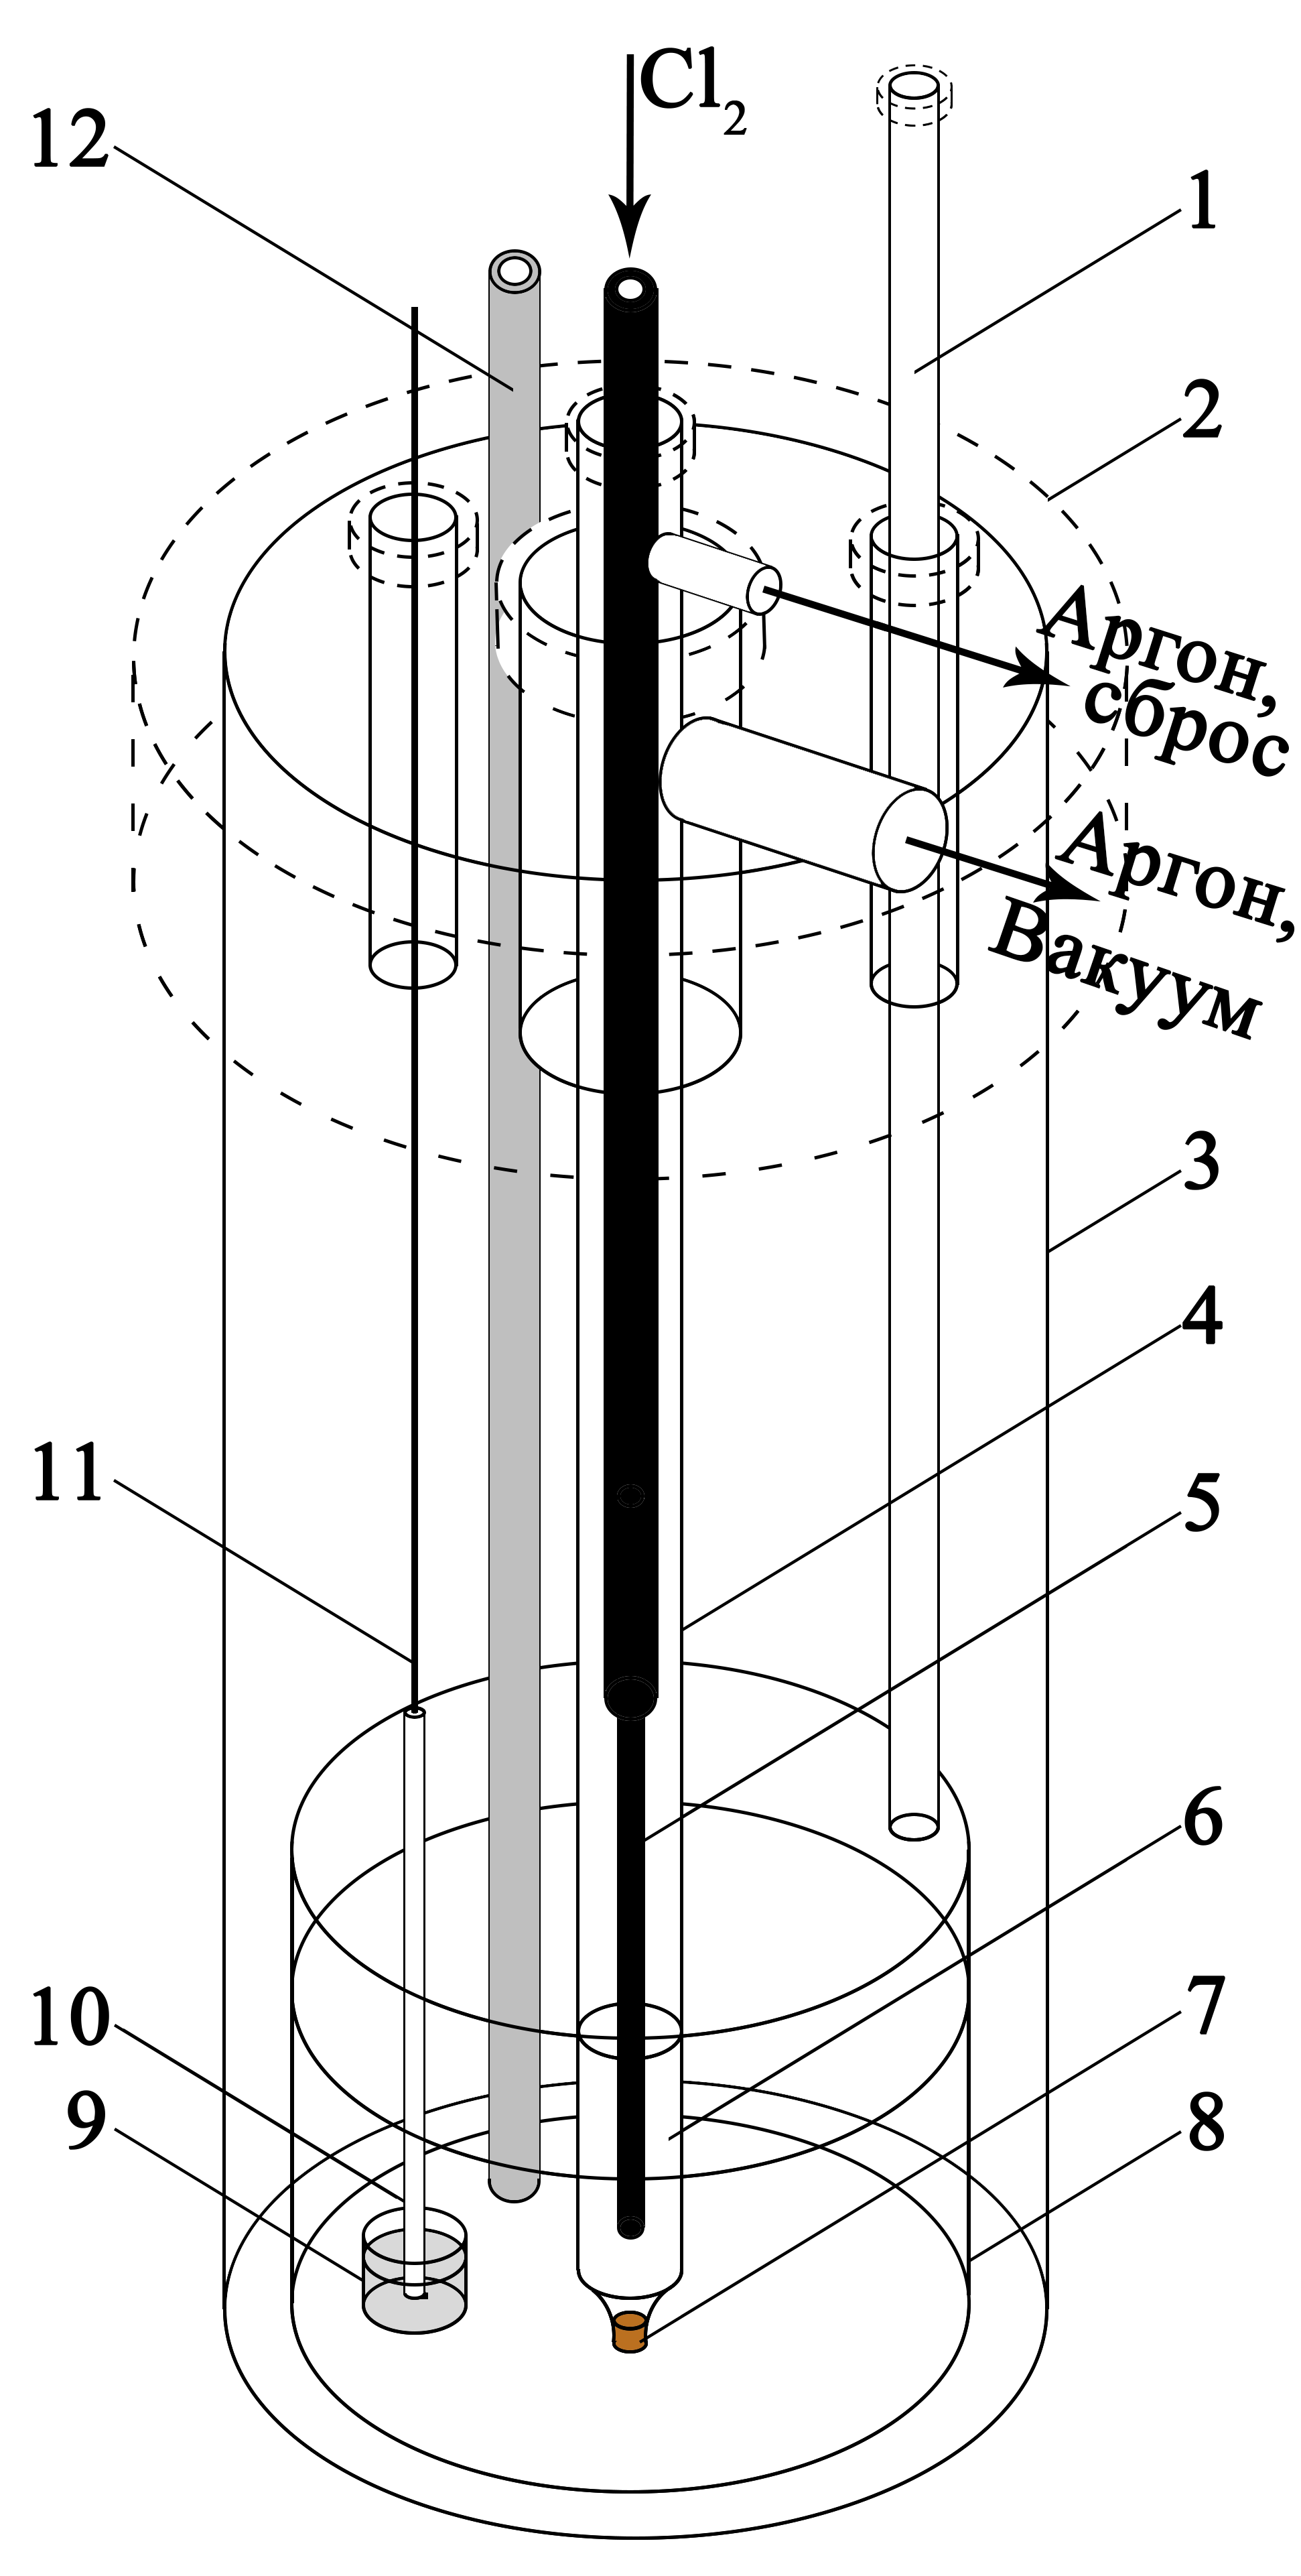 Конструкция электрохимической ячейки для хронопотенциометрических измерений: 1 – кварцевый капилляр для пробоотбора; 2 – пробка из вакуумной резины; 3 – кварцевая ячейка; 4 – чехол хлорного электрода; 5 – графитовая трубка для подачи Cl2; 6 – соль-растворитель; 7 – диафрагма из асбеста; 8 – тигель из оксида алюминия с солевым электролитом; 9 – тигель из оксида бериллия с Ga; 10 – алундовый чехол для токоподвода рабочего электрода; 11 – вольфрамовый токоподвод рабочего электрода; 12 – чехол из оксида алюминия для термопары